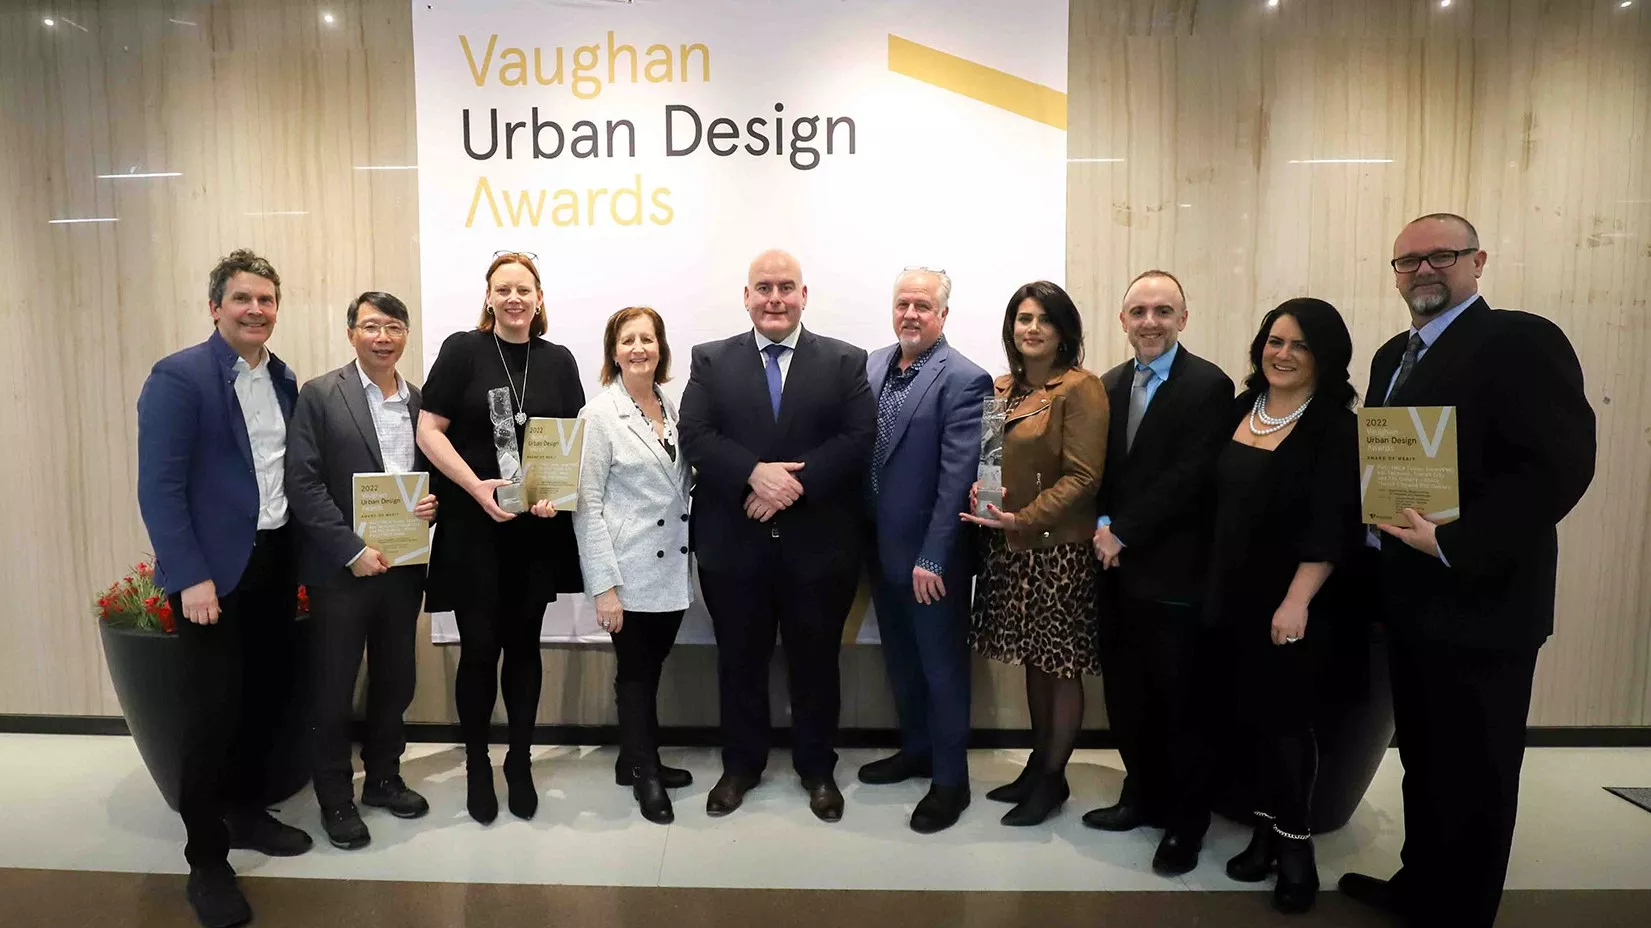 Image of Vaughan Urban Design Award winners